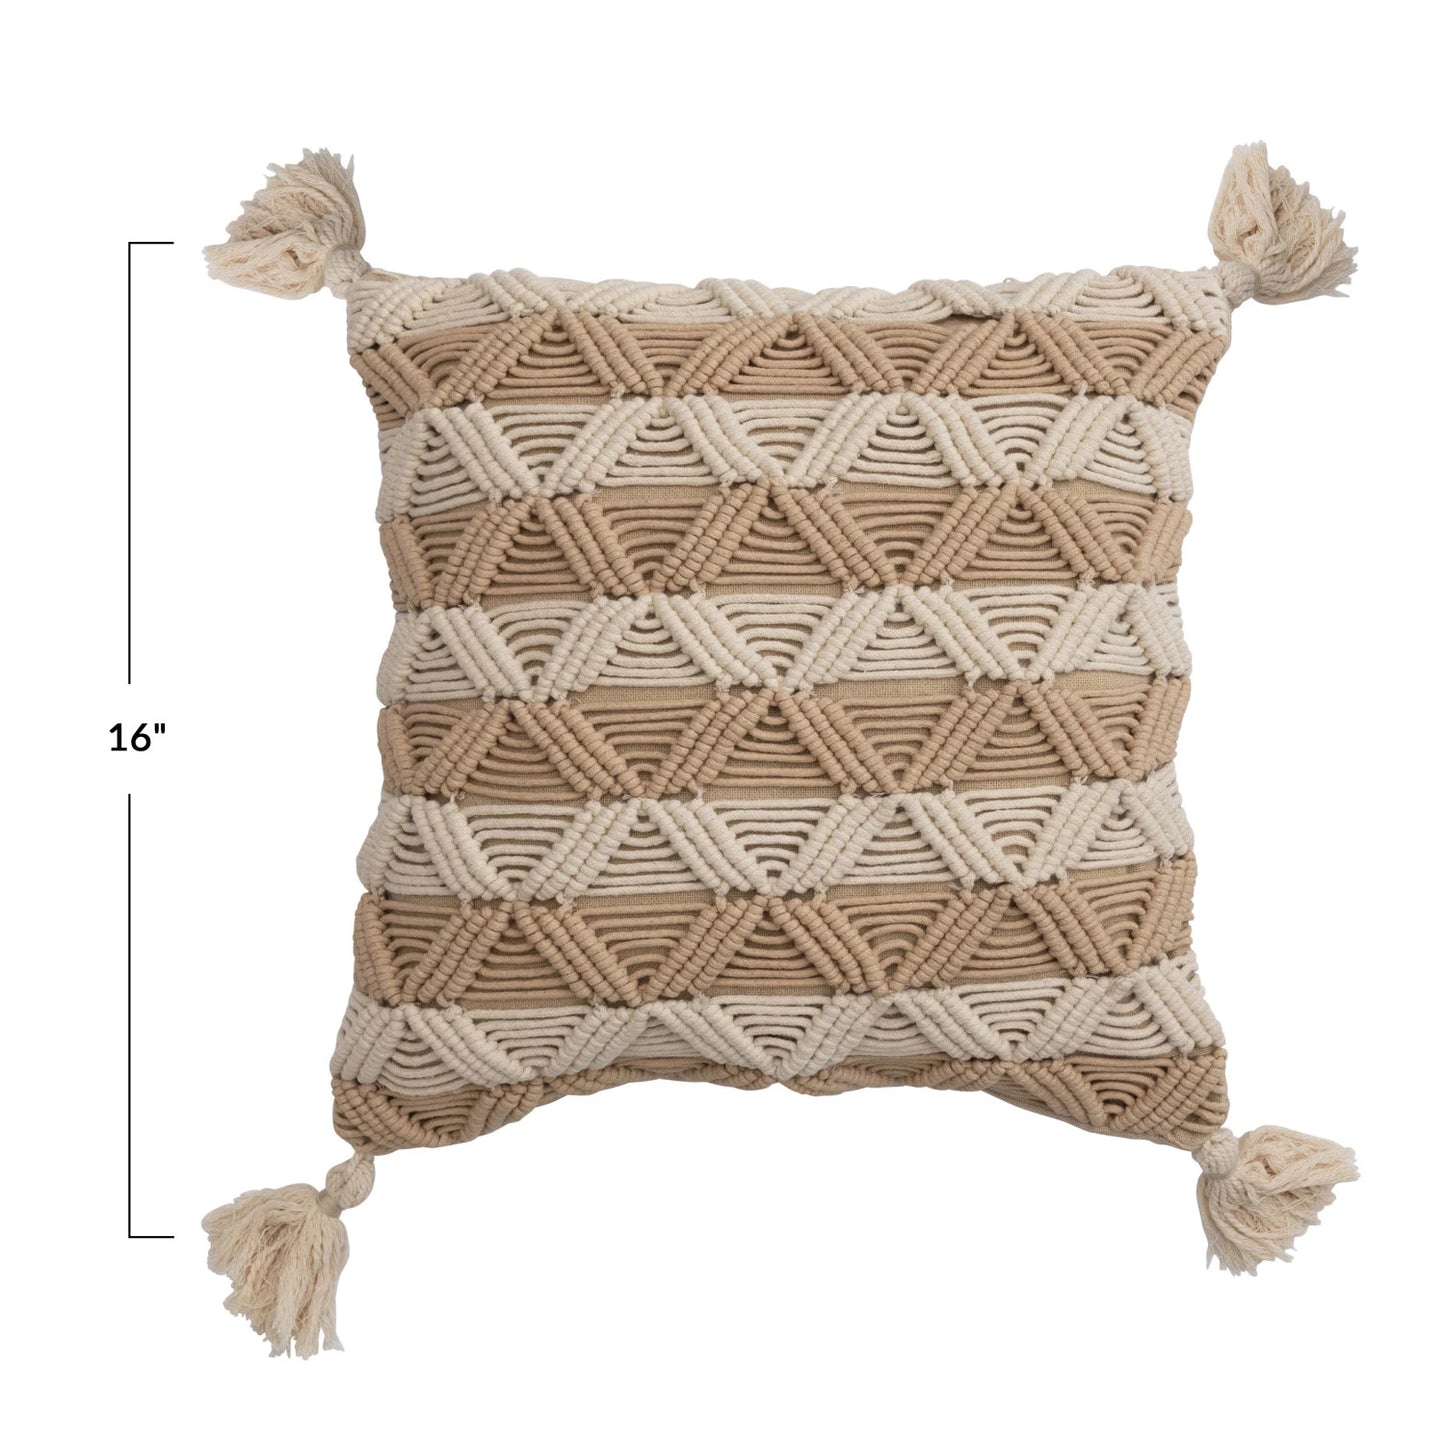 Woven Cotton Macrame Pillow w/ Stripes & Tassels